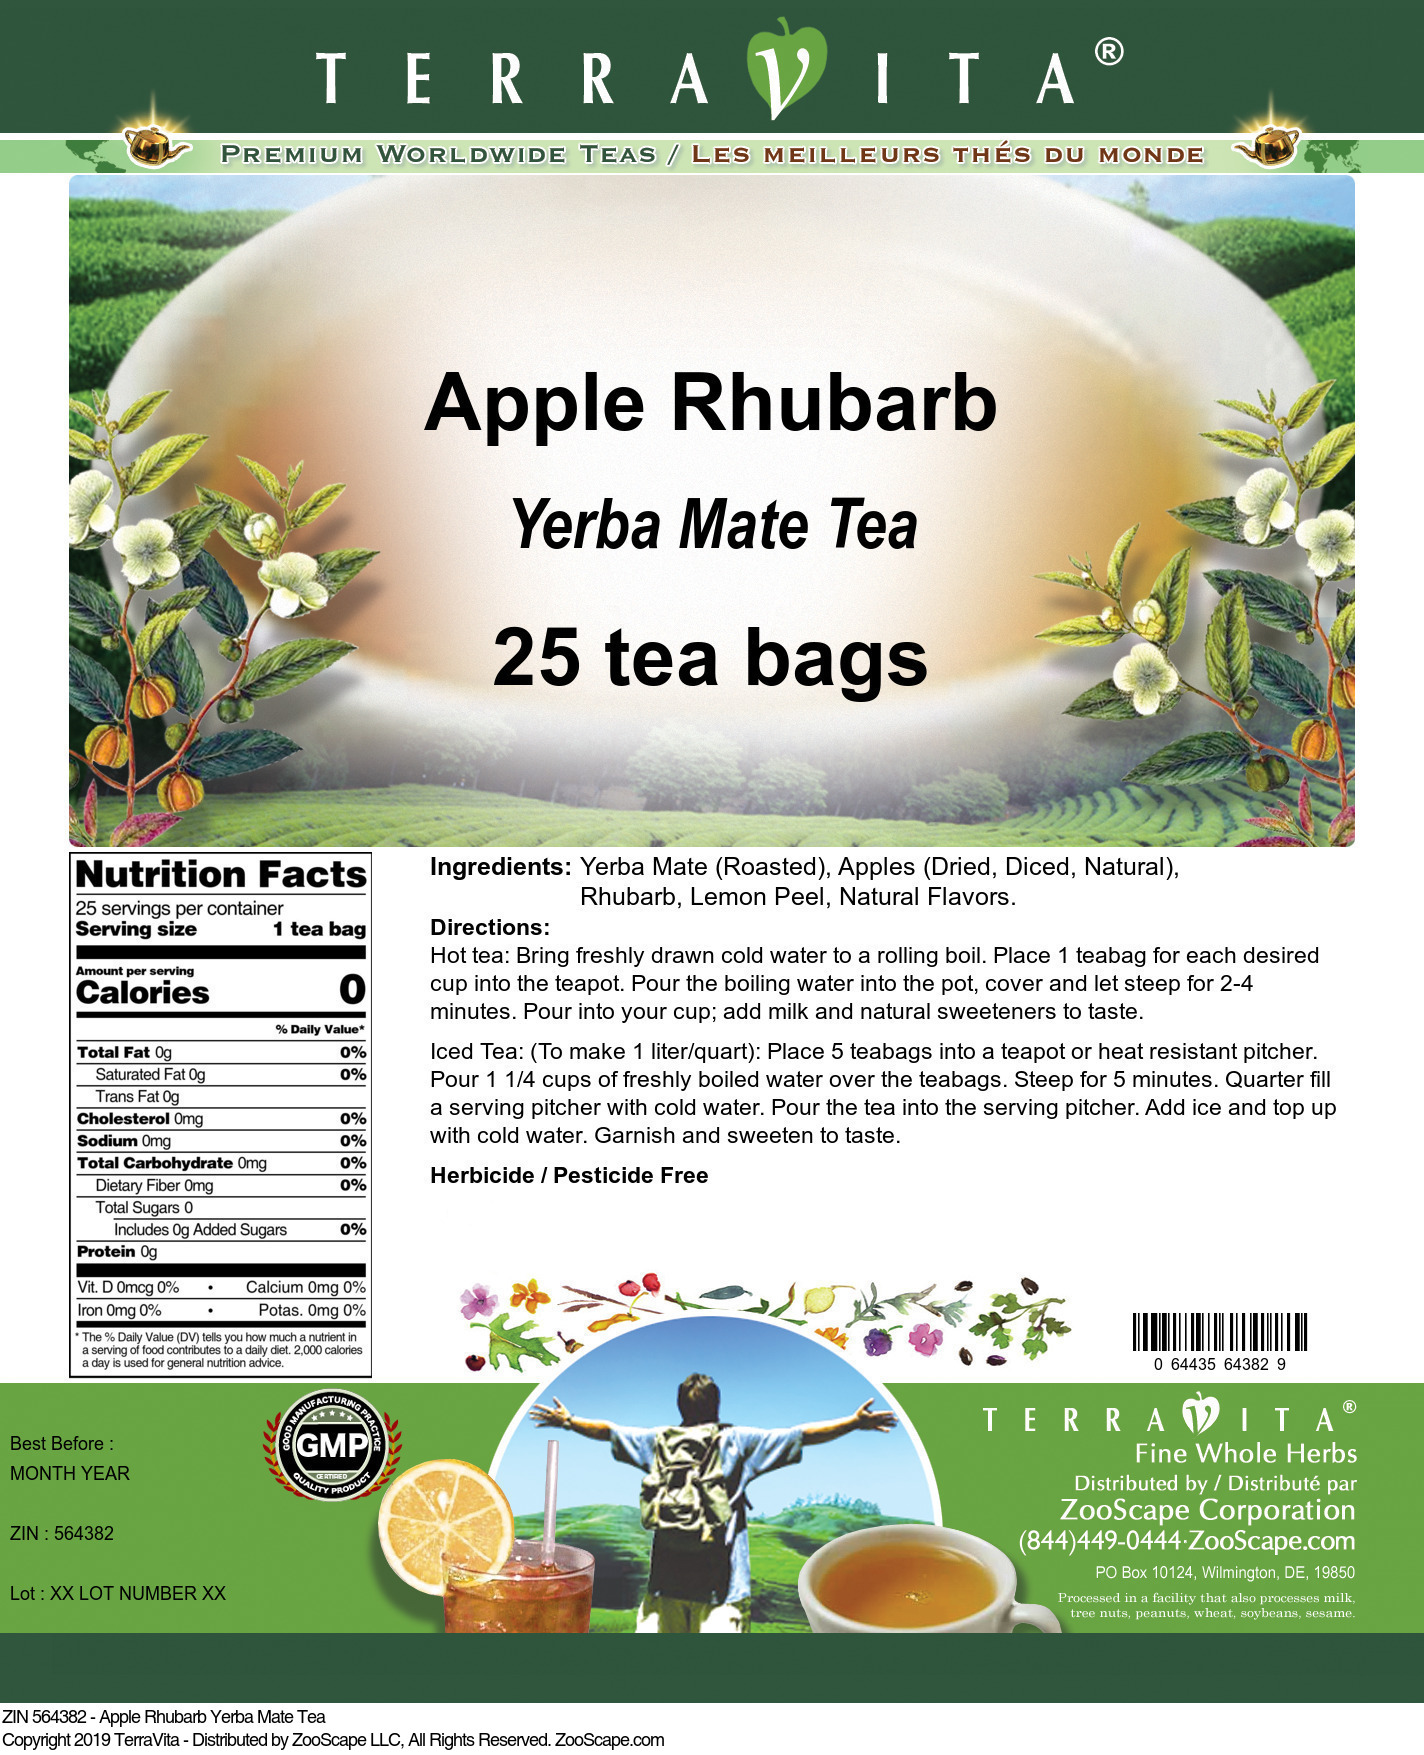 Apple Rhubarb Yerba Mate Tea - Label